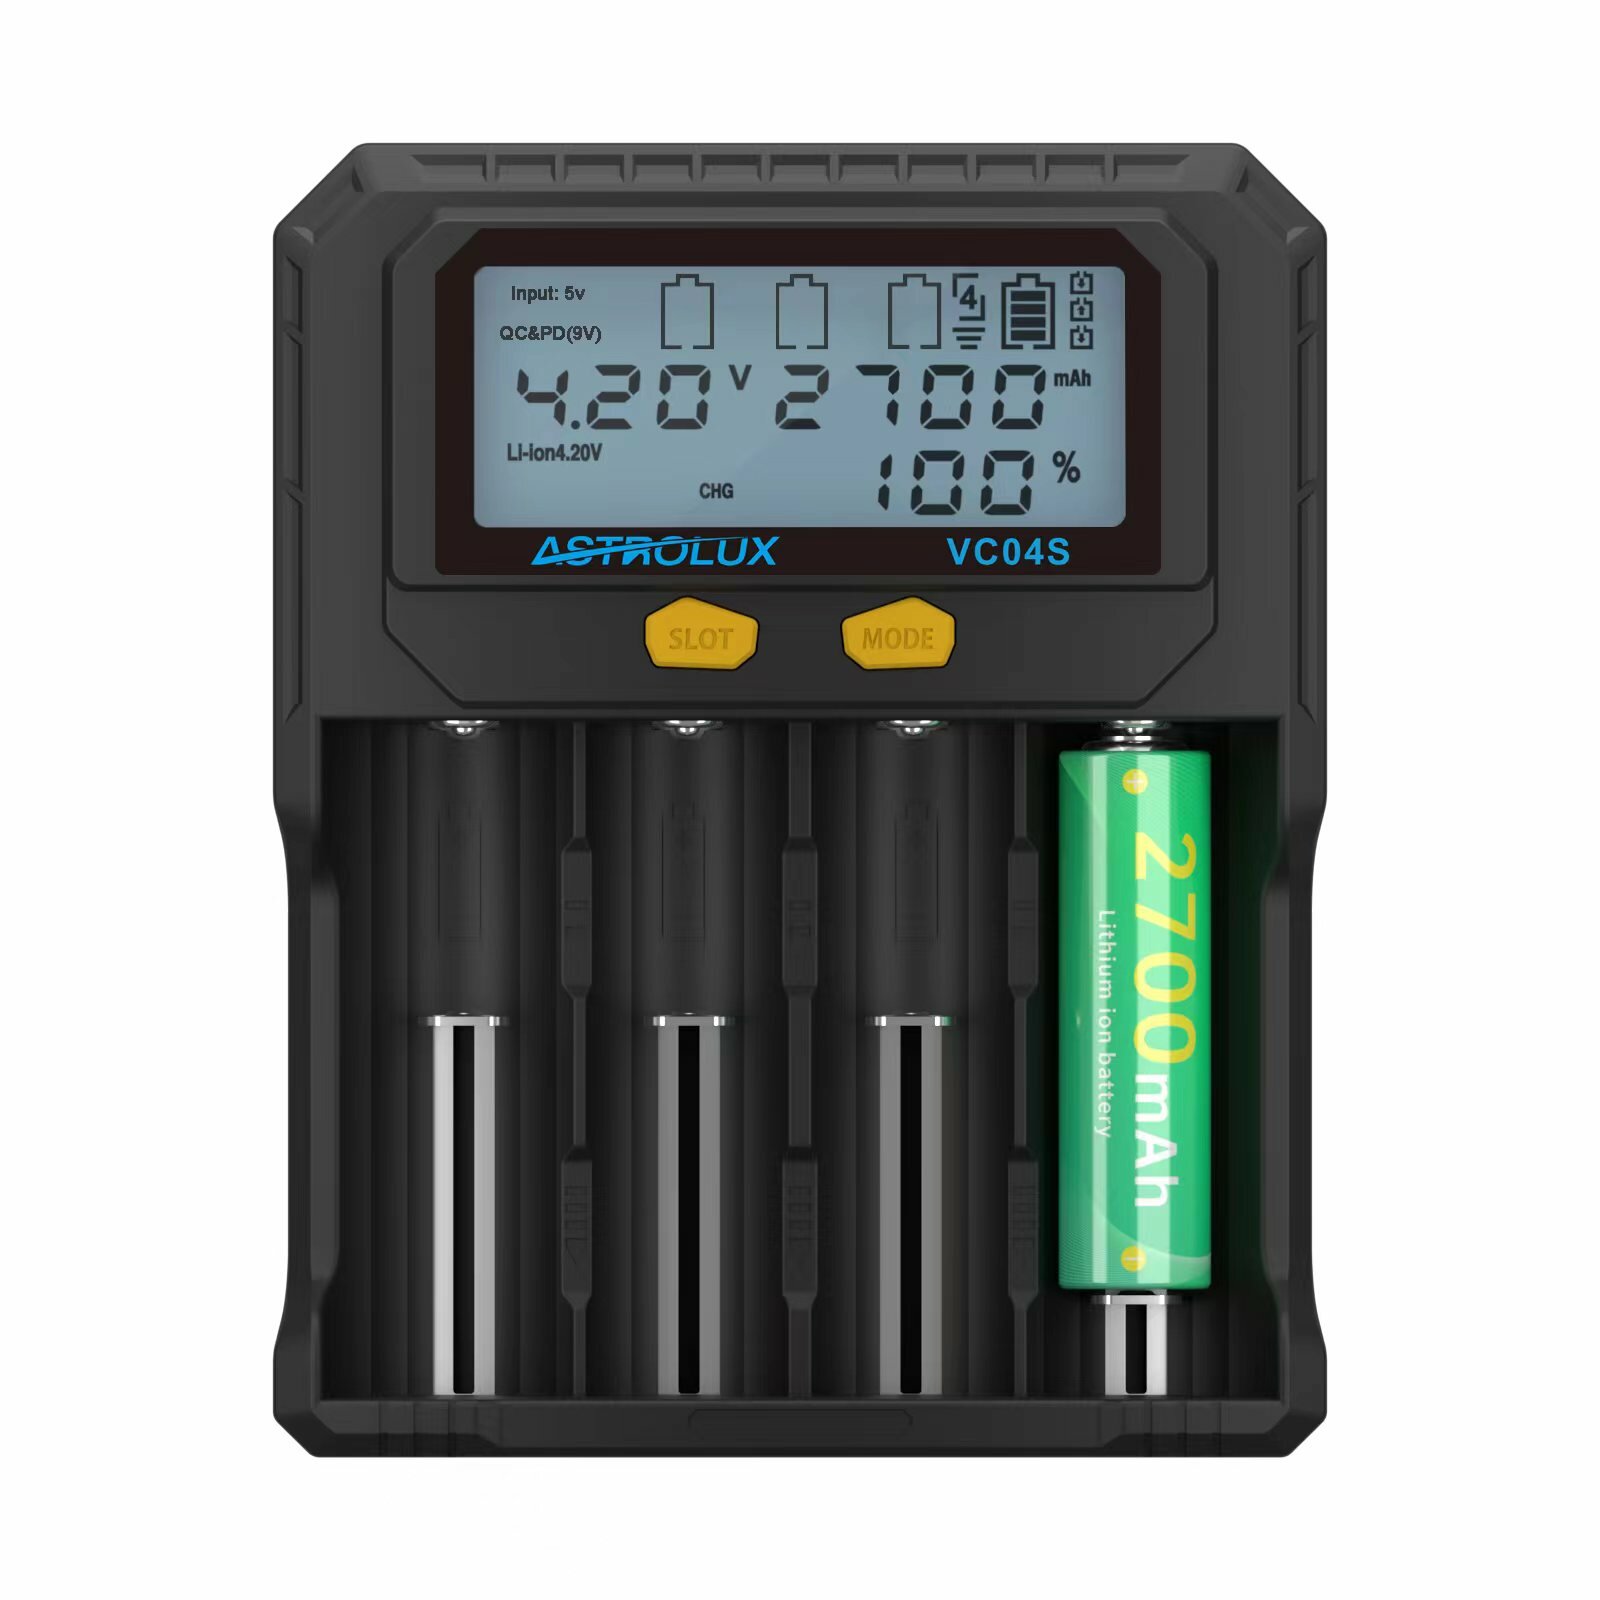 Ładowarka do baterii Astrolux VC04S za $16.79 / ~69zł